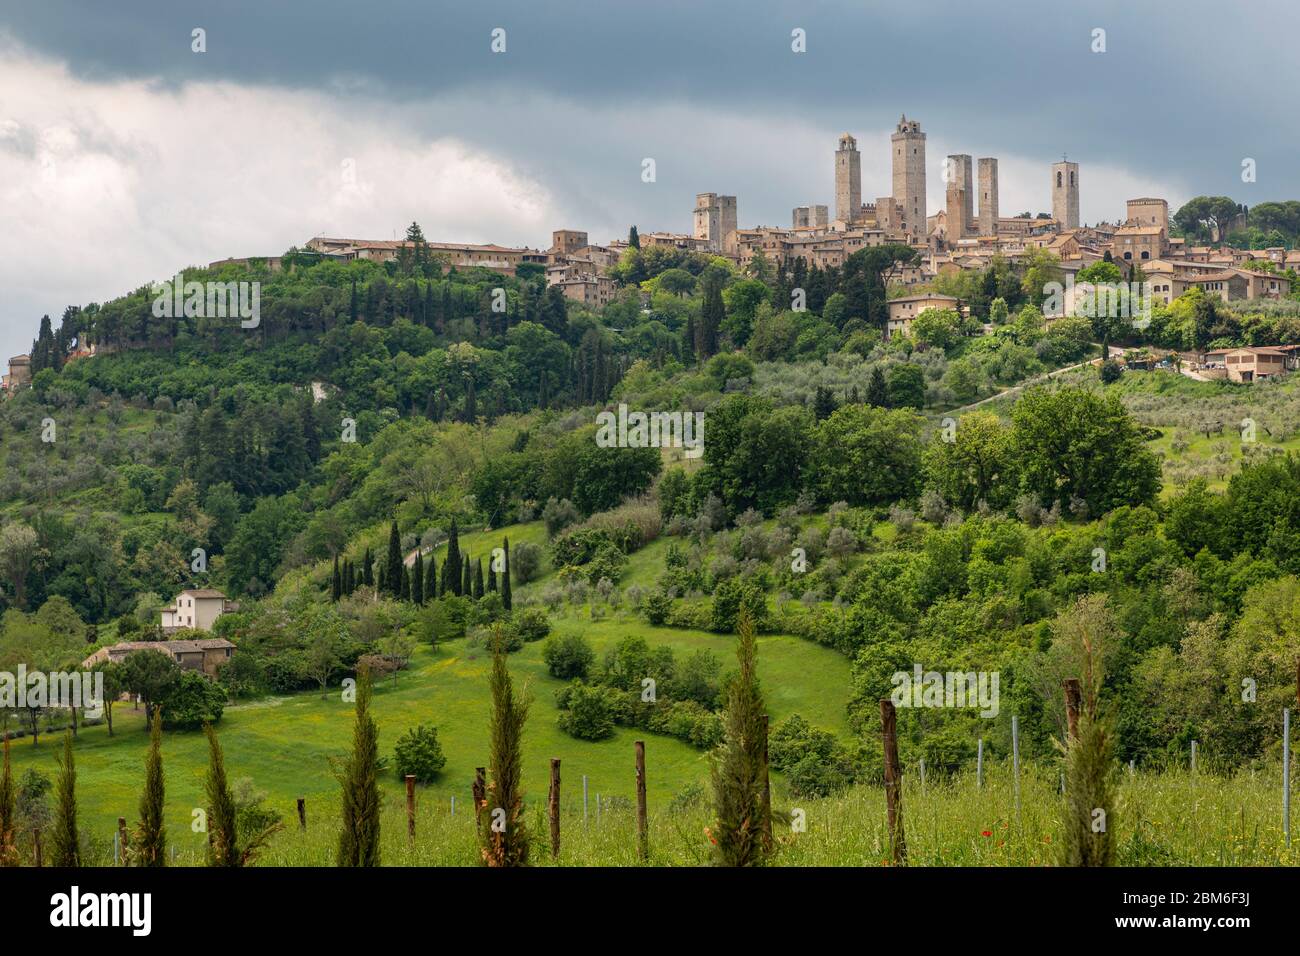 San Gimignano ist eine italienische Kleinstadt in der Toskana mit einem mittelalterlichen Stadtkern. San Gimignano wird auch „Mittelalterliches Manhat Stock Photo